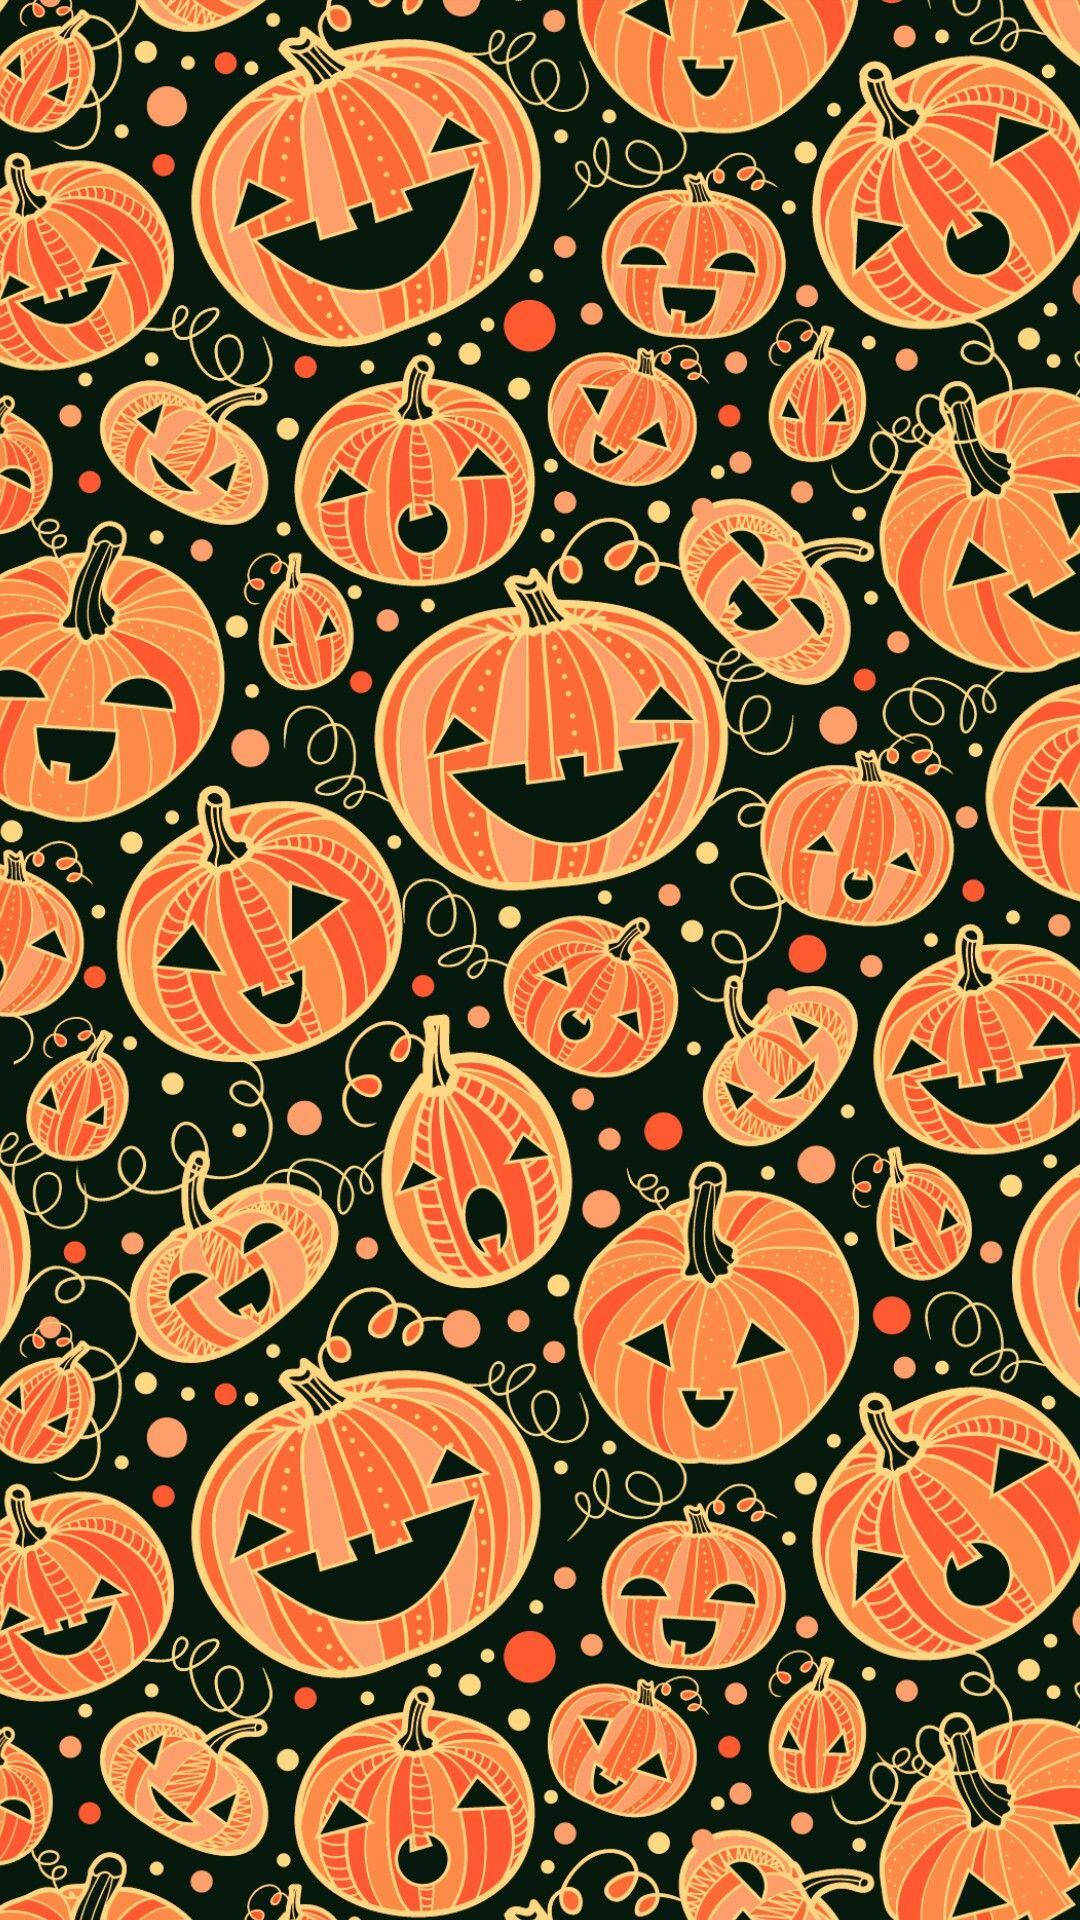 Magieund Technologie Vereinen Sich An Diesem Halloween Mit Einem Gruseligen Ipad. Wallpaper